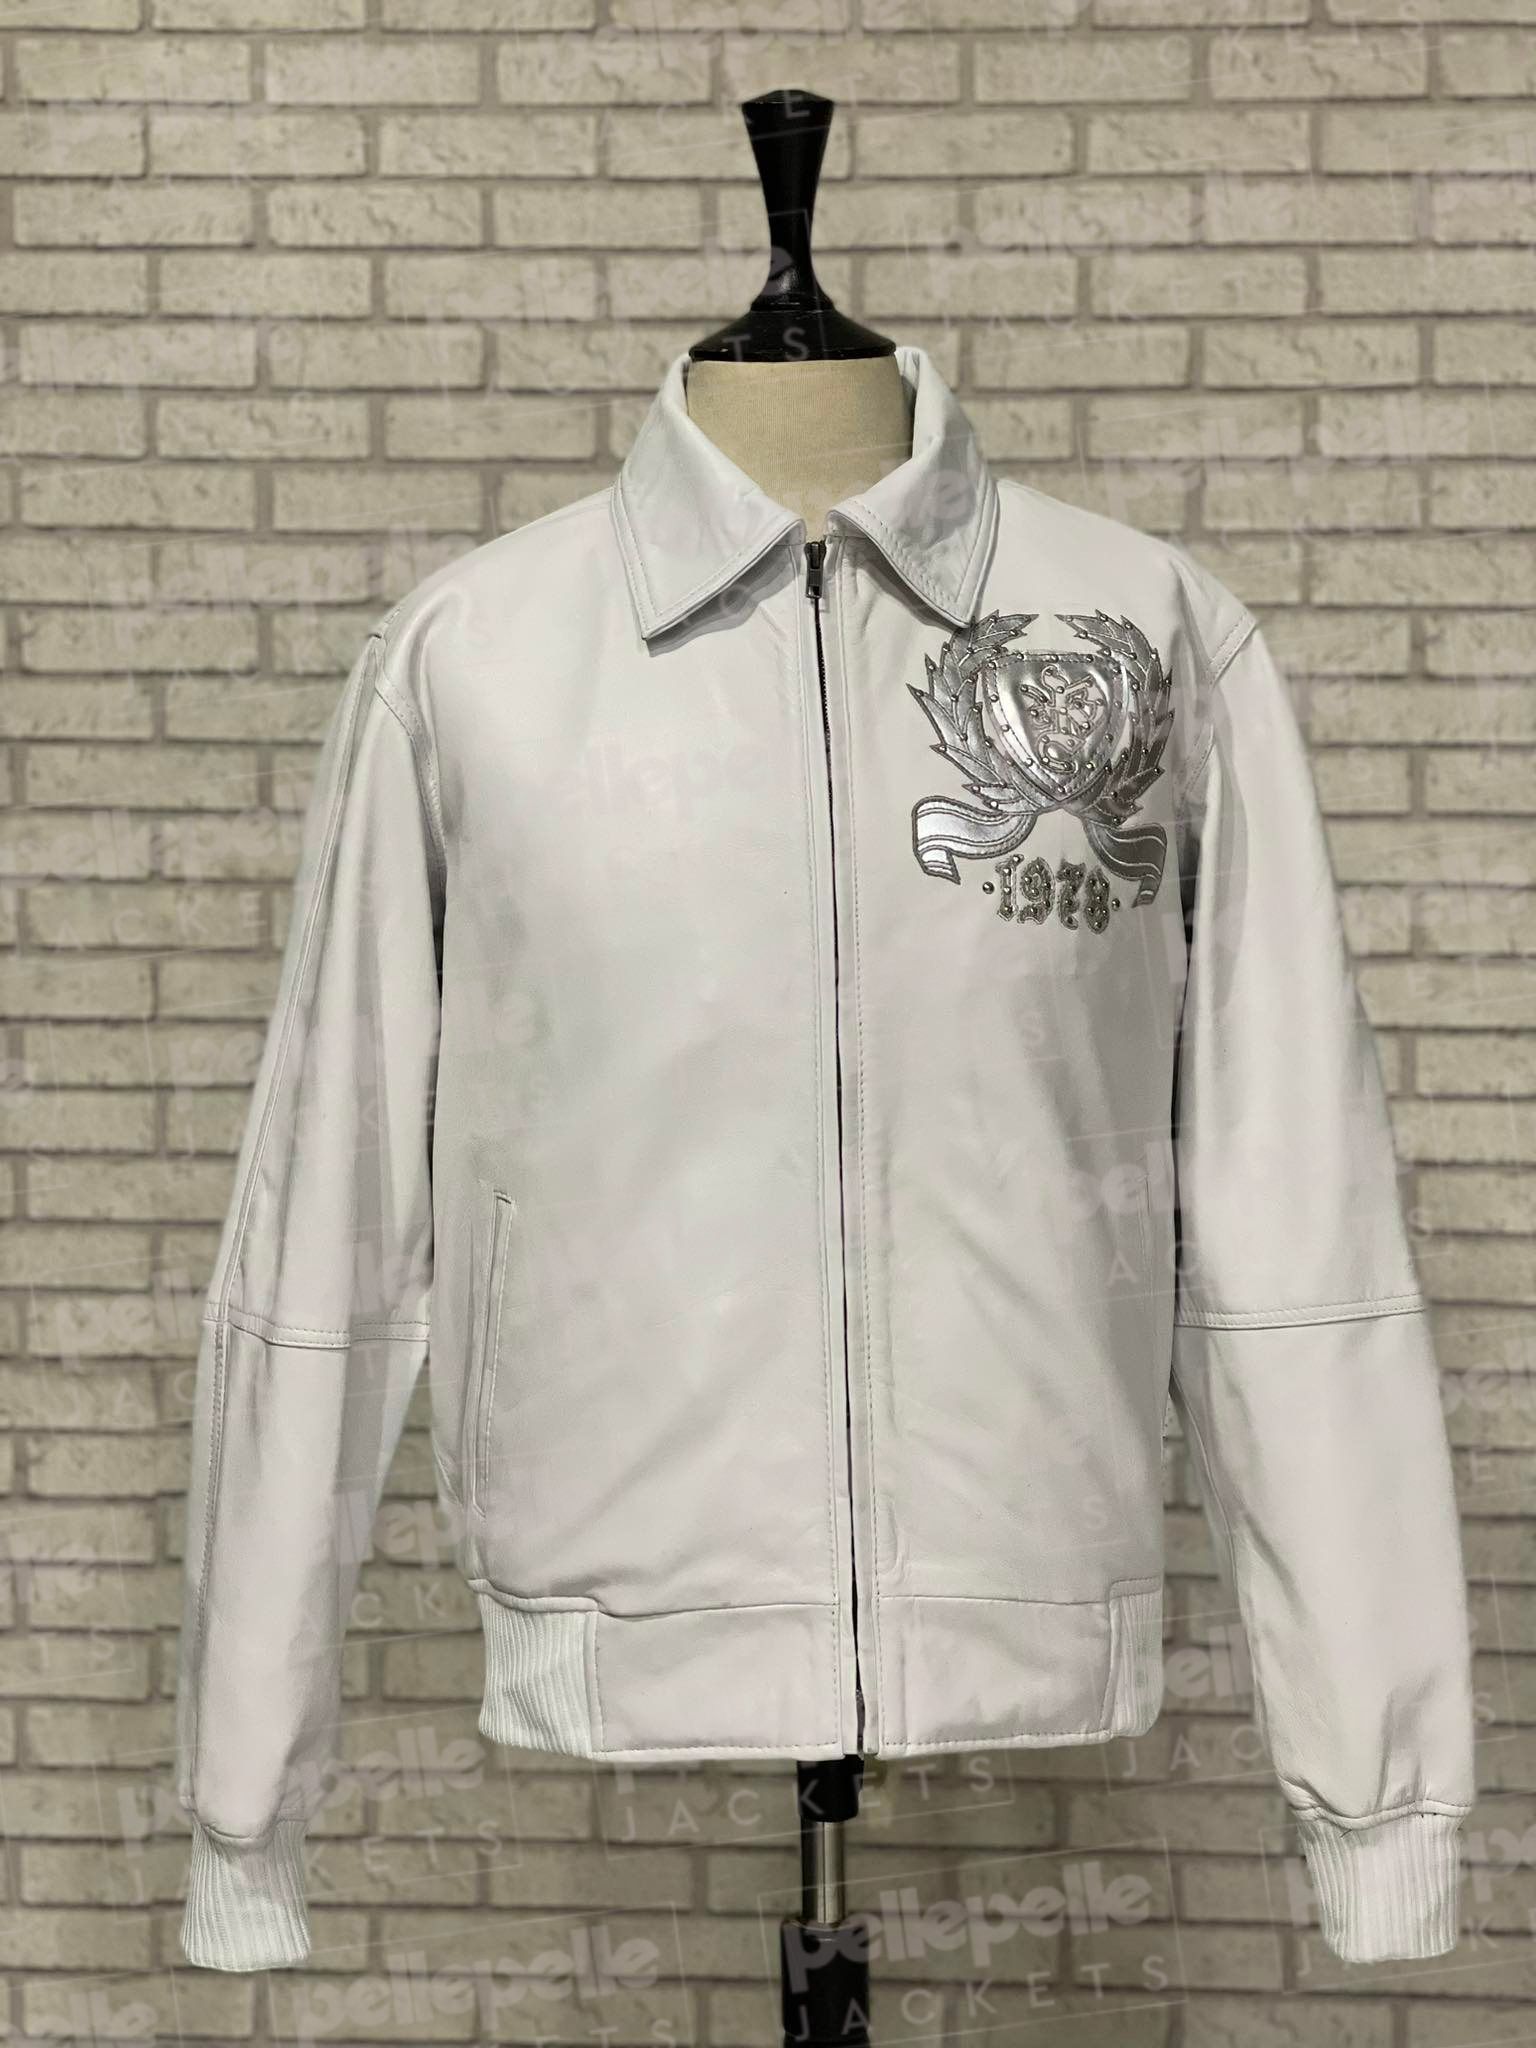 Pelle-Pelle-Reign-Supreme-White-Leather-Mens-Jacket.jpg